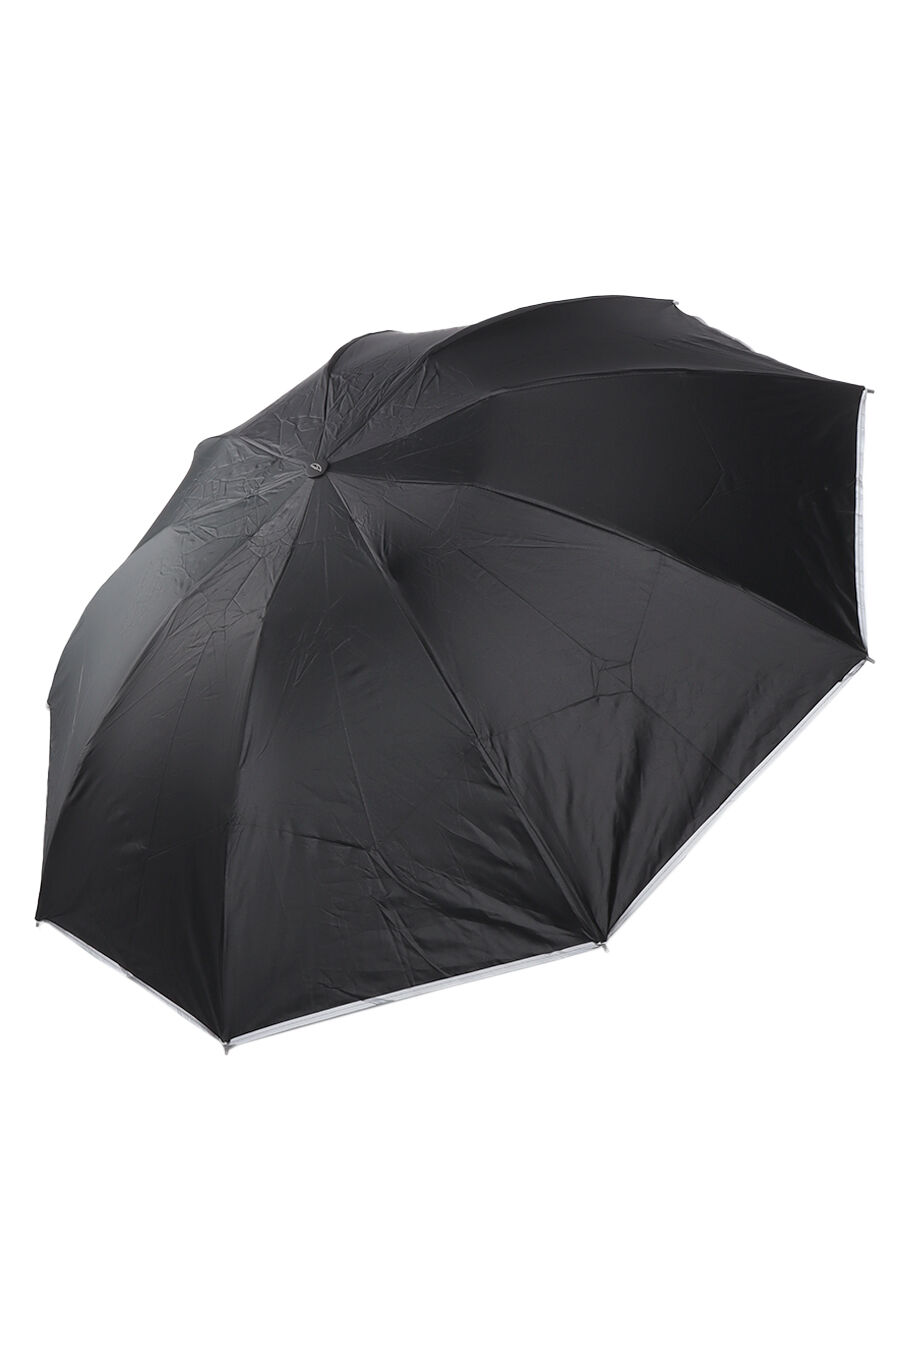 Зонт муж. Umbrella 6509 полный автомат (черный)